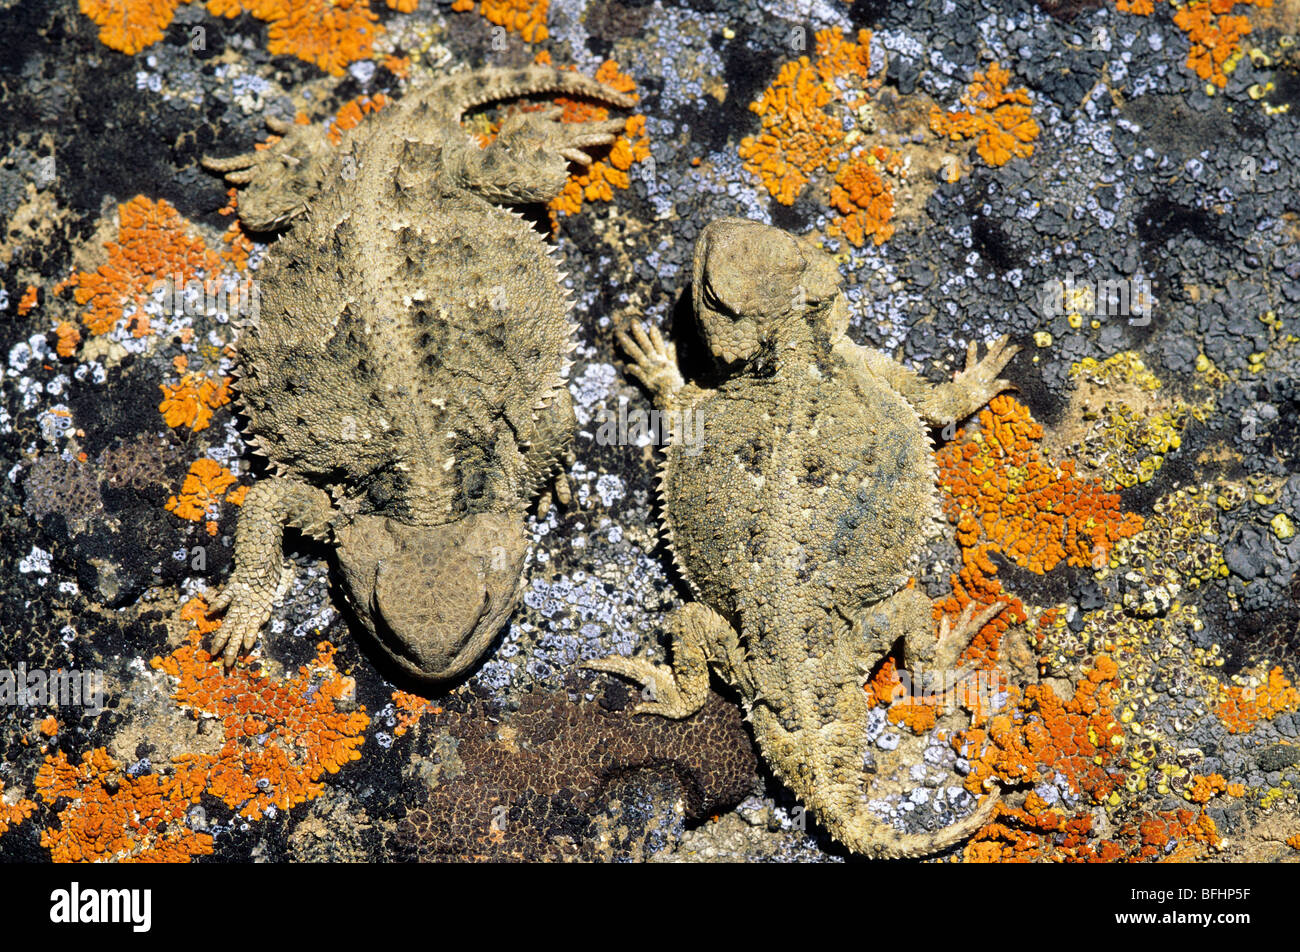 Mâle adulte (plus petit animal sur la droite) et femelle grand iguane à petites cornes (Phrynosoma hernandesi)n de l'Alberta, Canada Banque D'Images